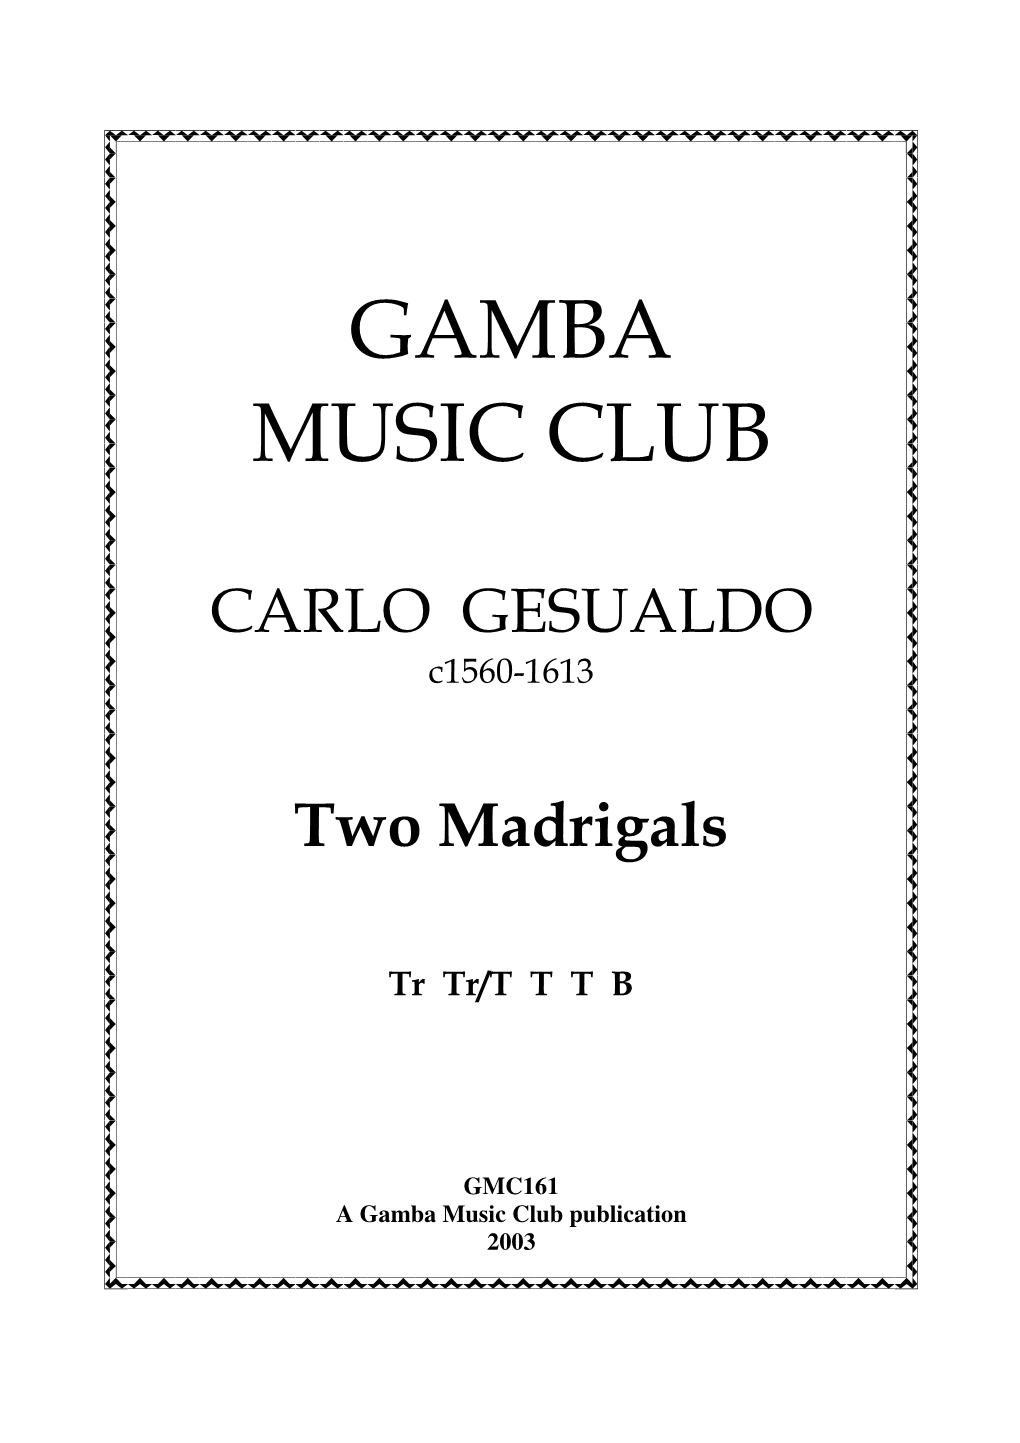 Gamba Music Club